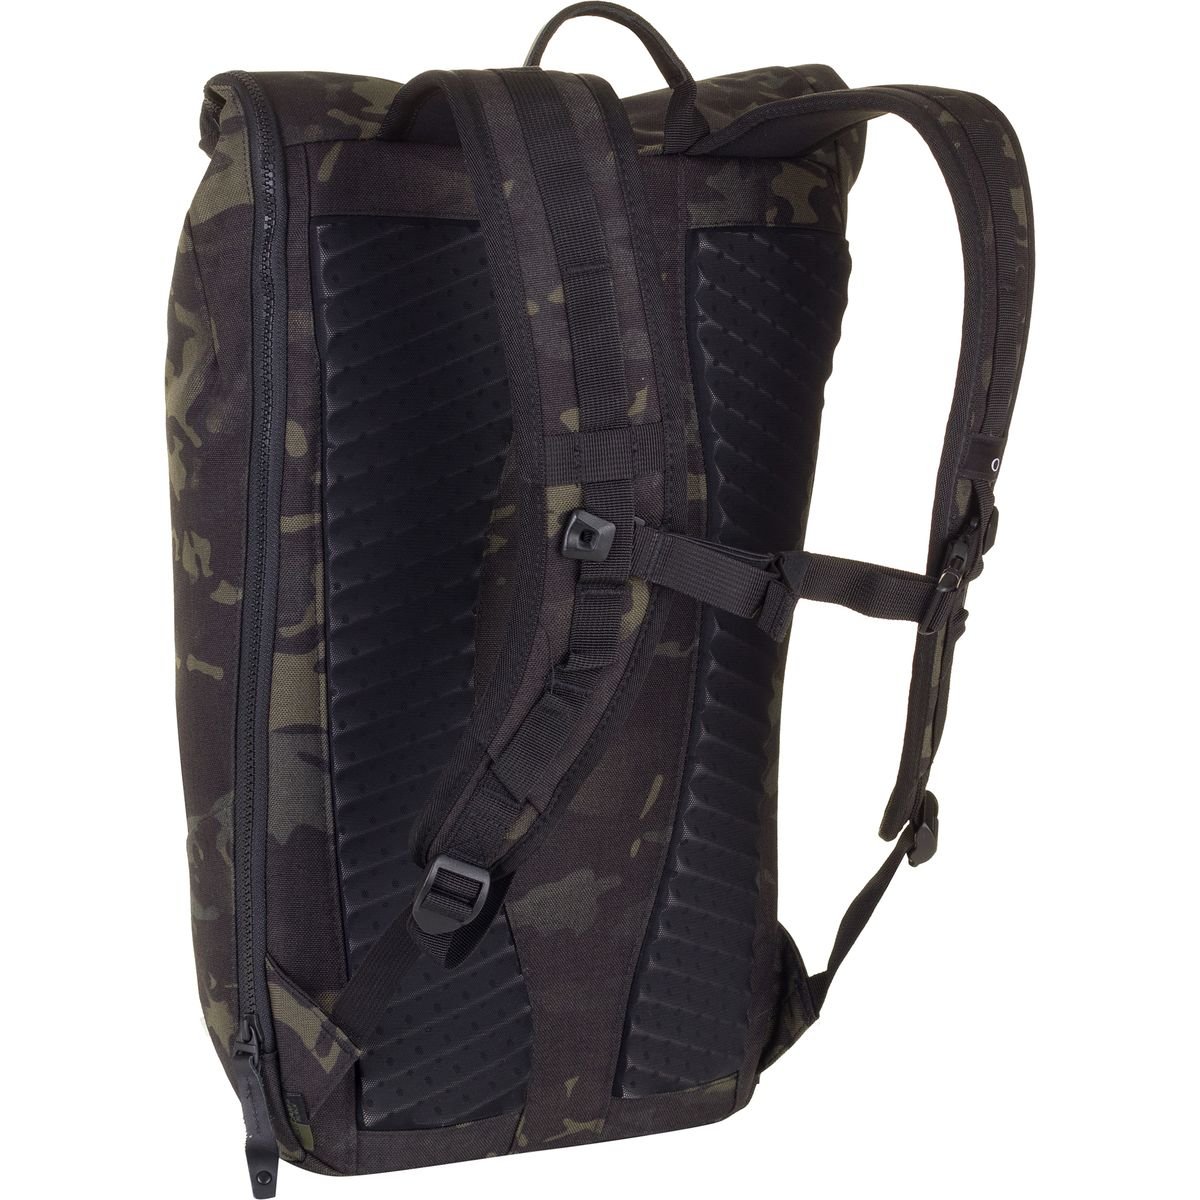 Oakley Voyage - Notebook carrying backpack - 15" - black multicam - image 2 of 2